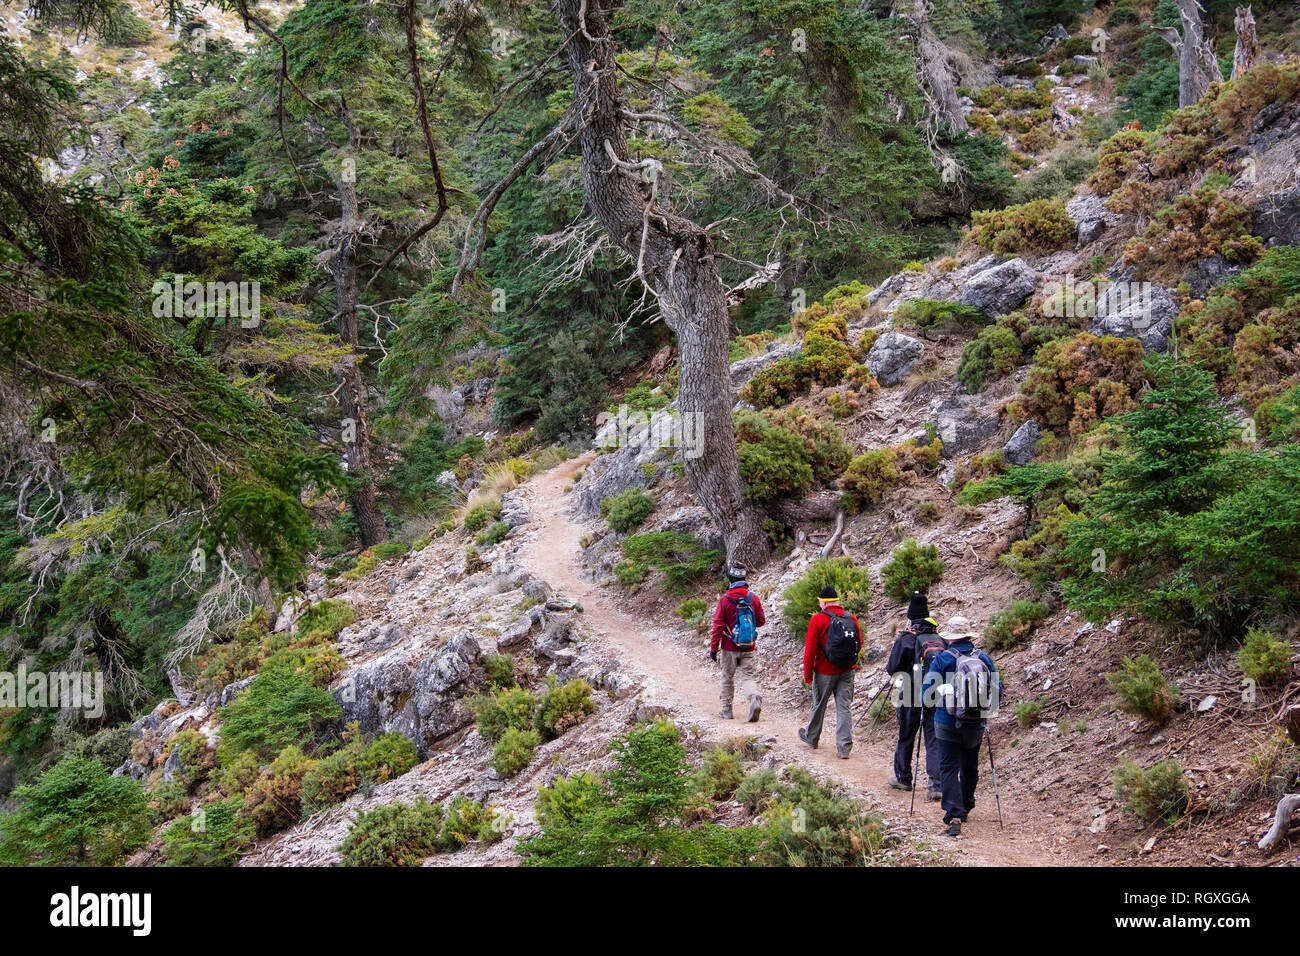 Wandern in der Natur. Biosphärenreservat. Naturpark Sierra de las Nieves. Spanische Tanne Abies pinsapo. Ronda, Malaga Provinz. Andalusien, Südspanien. Stockfoto